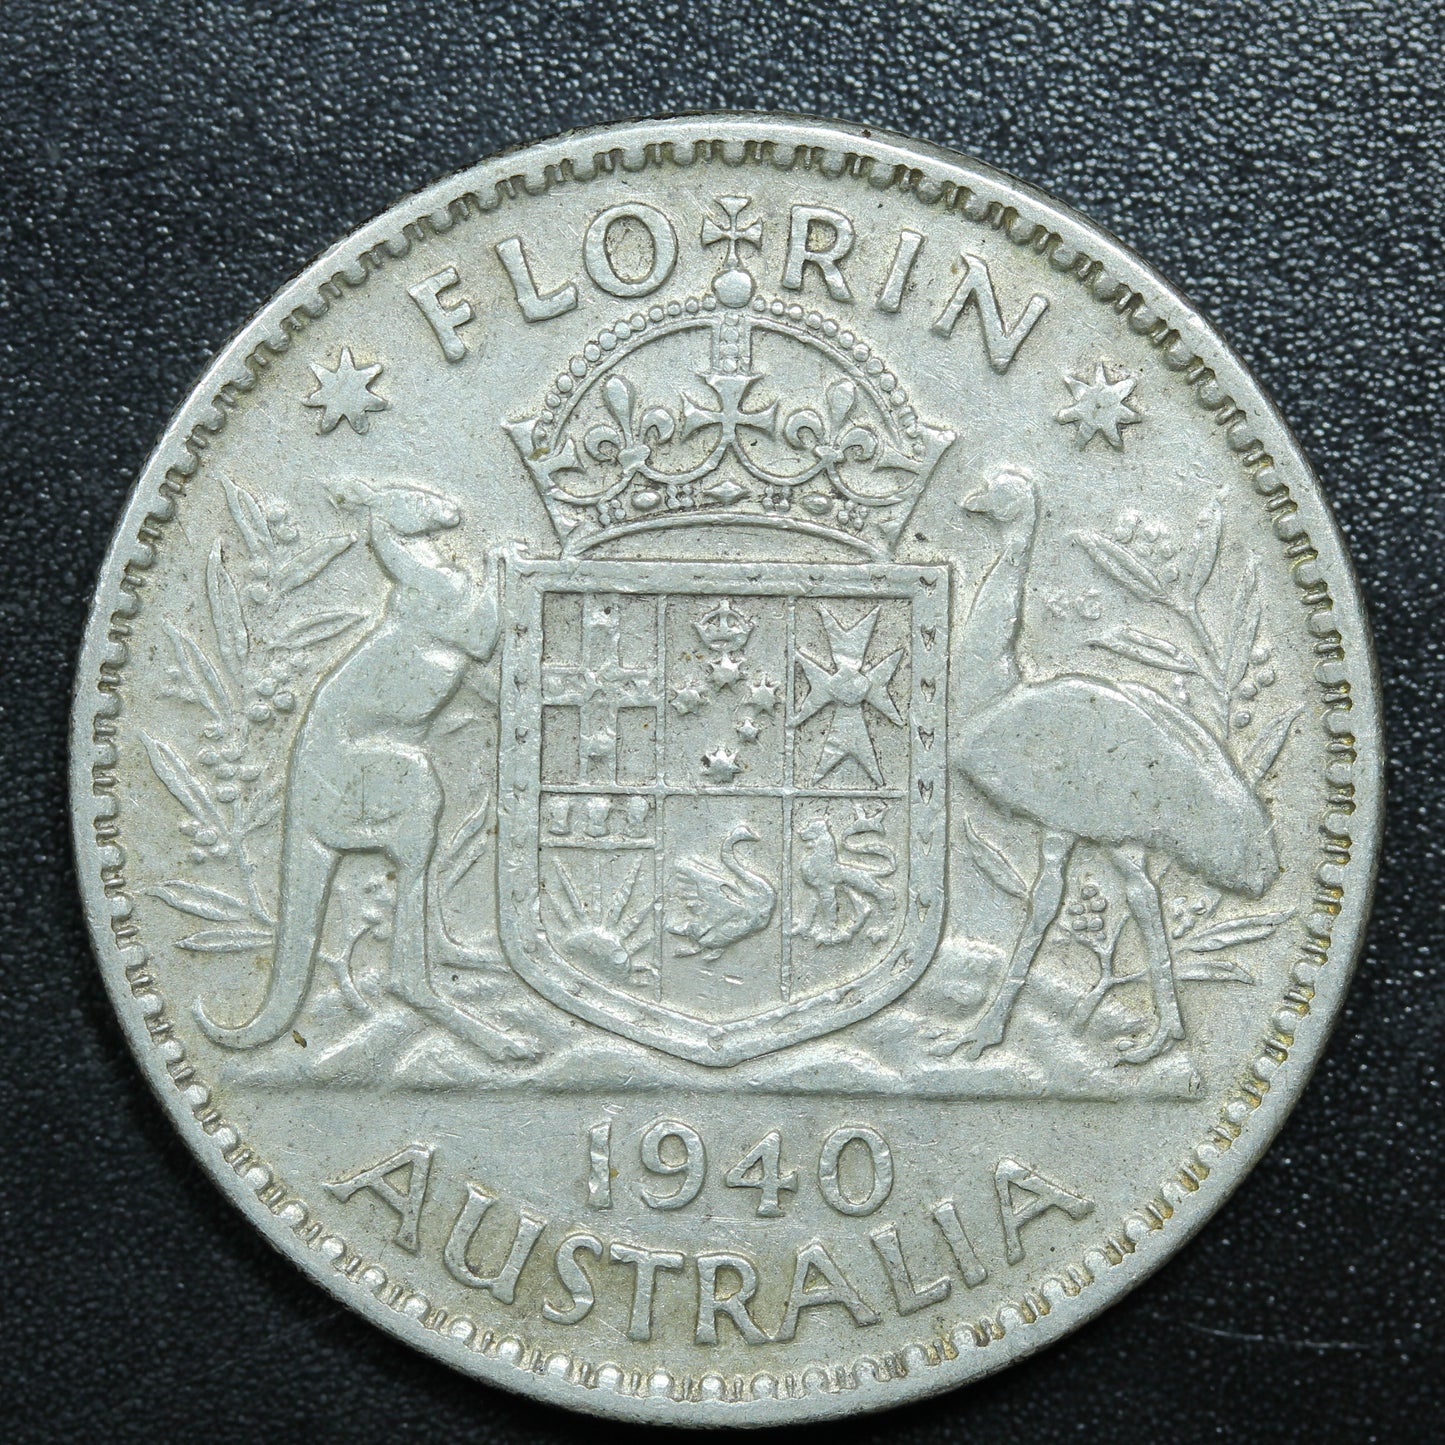 1940 Australia 1 Florin Silver Coin KM# 40